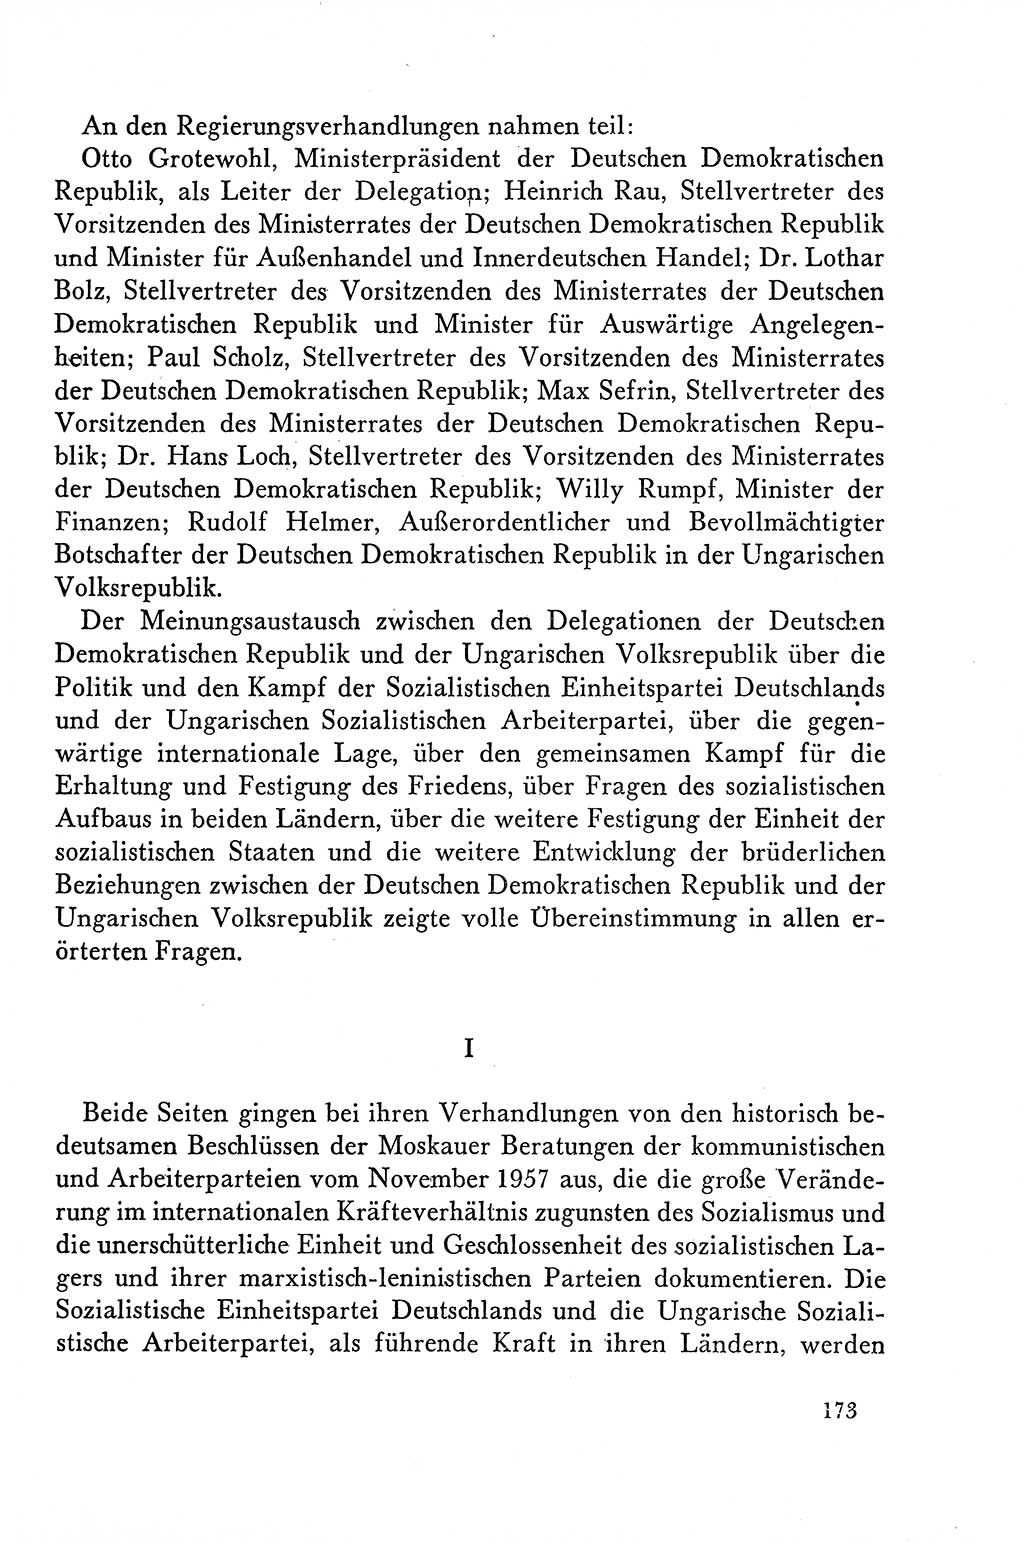 Dokumente der Sozialistischen Einheitspartei Deutschlands (SED) [Deutsche Demokratische Republik (DDR)] 1958-1959, Seite 173 (Dok. SED DDR 1958-1959, S. 173)